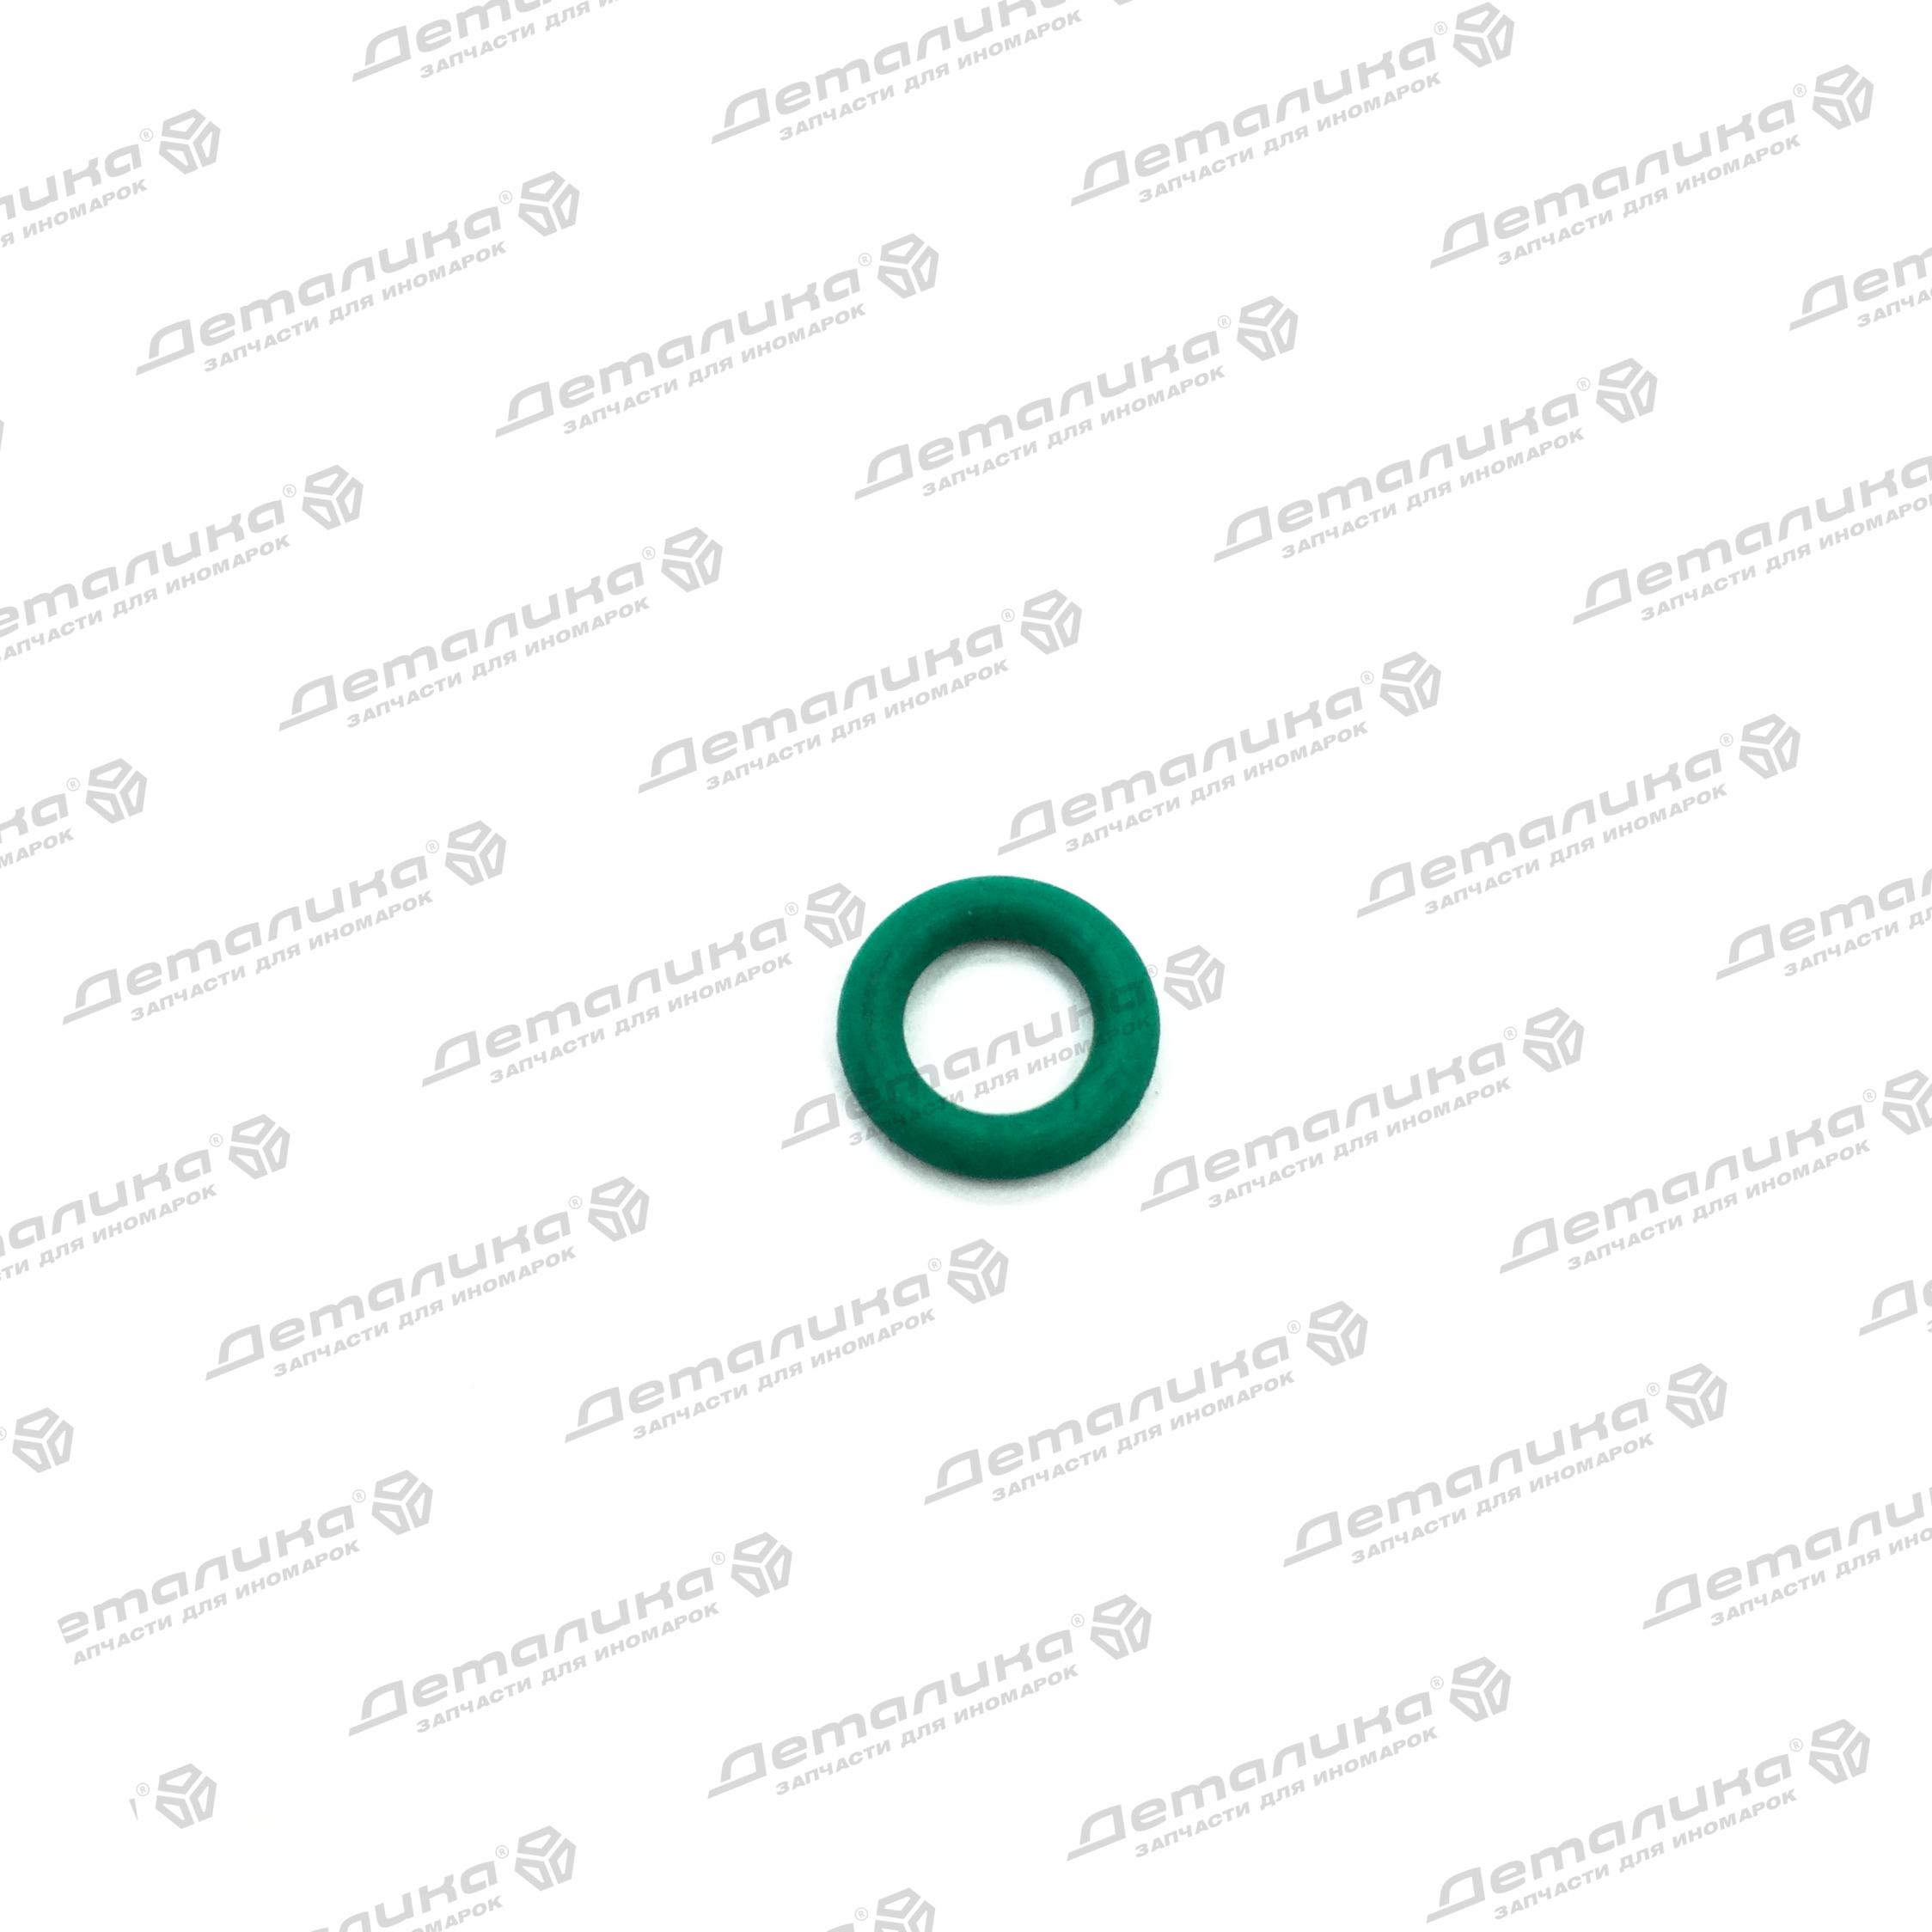 WHT002287C VAG уплотнительное кольцо, 110 рублей, наличие 0 штук